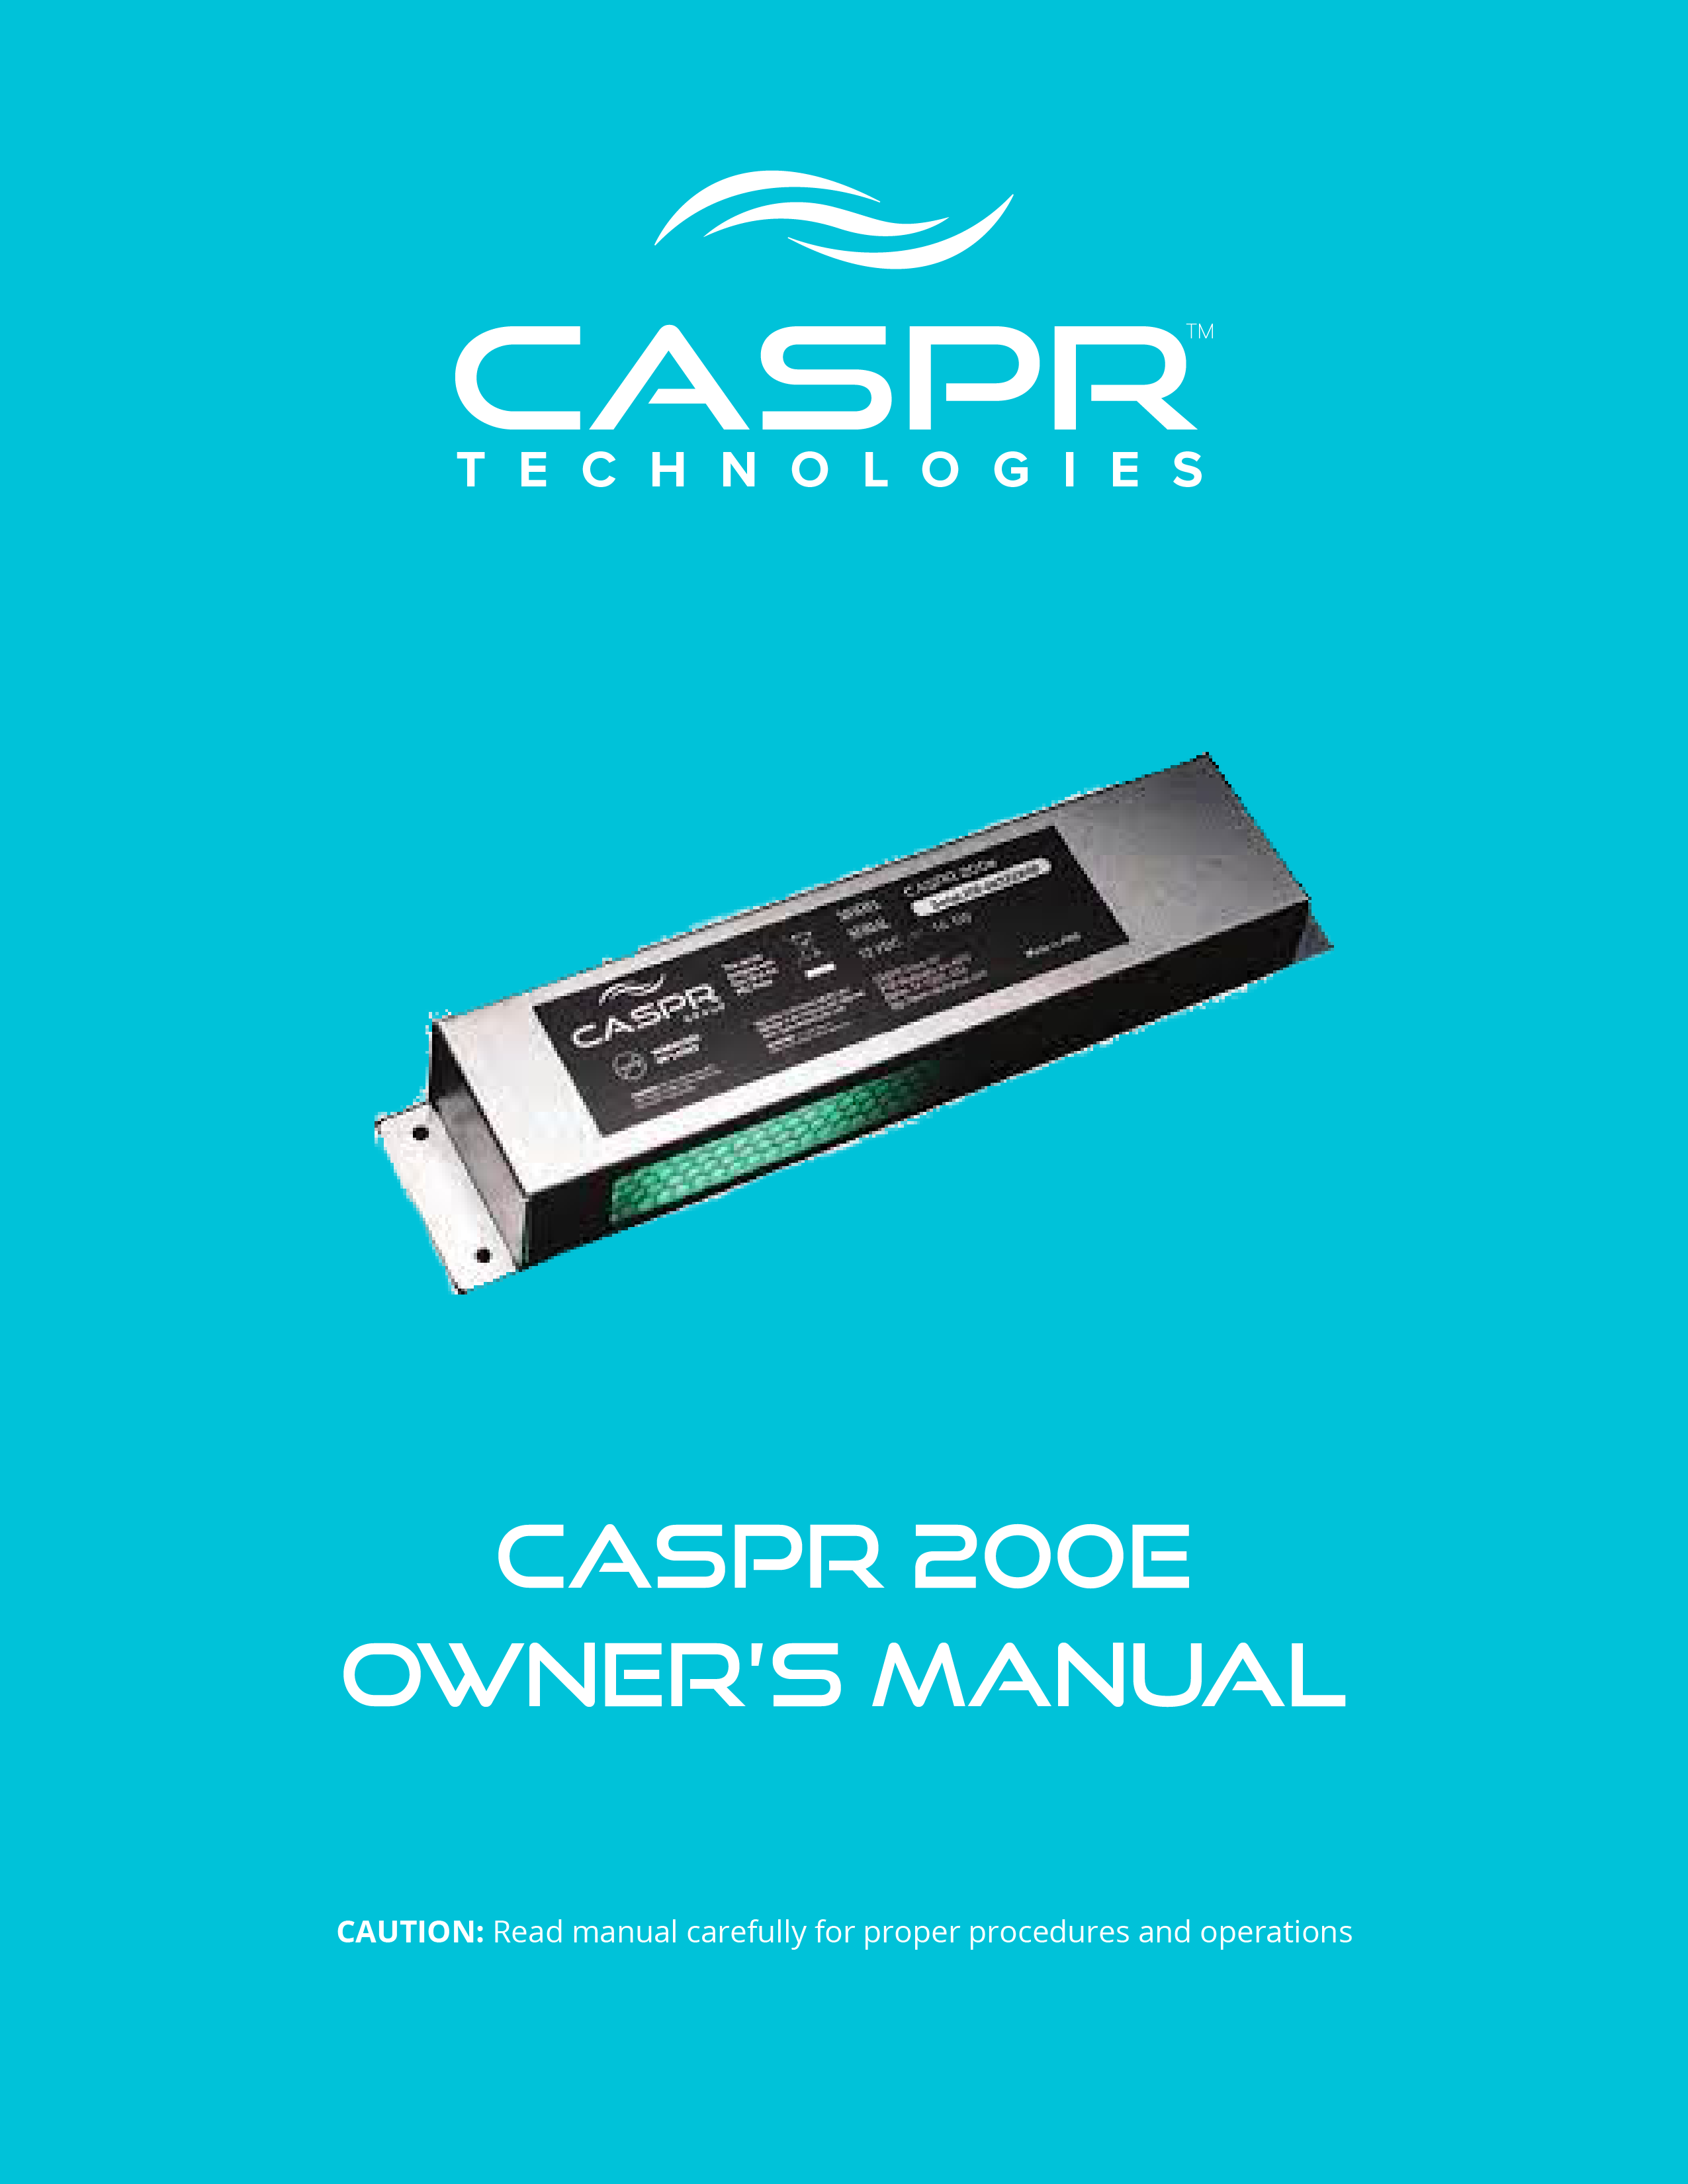 CASPR 200e Manual